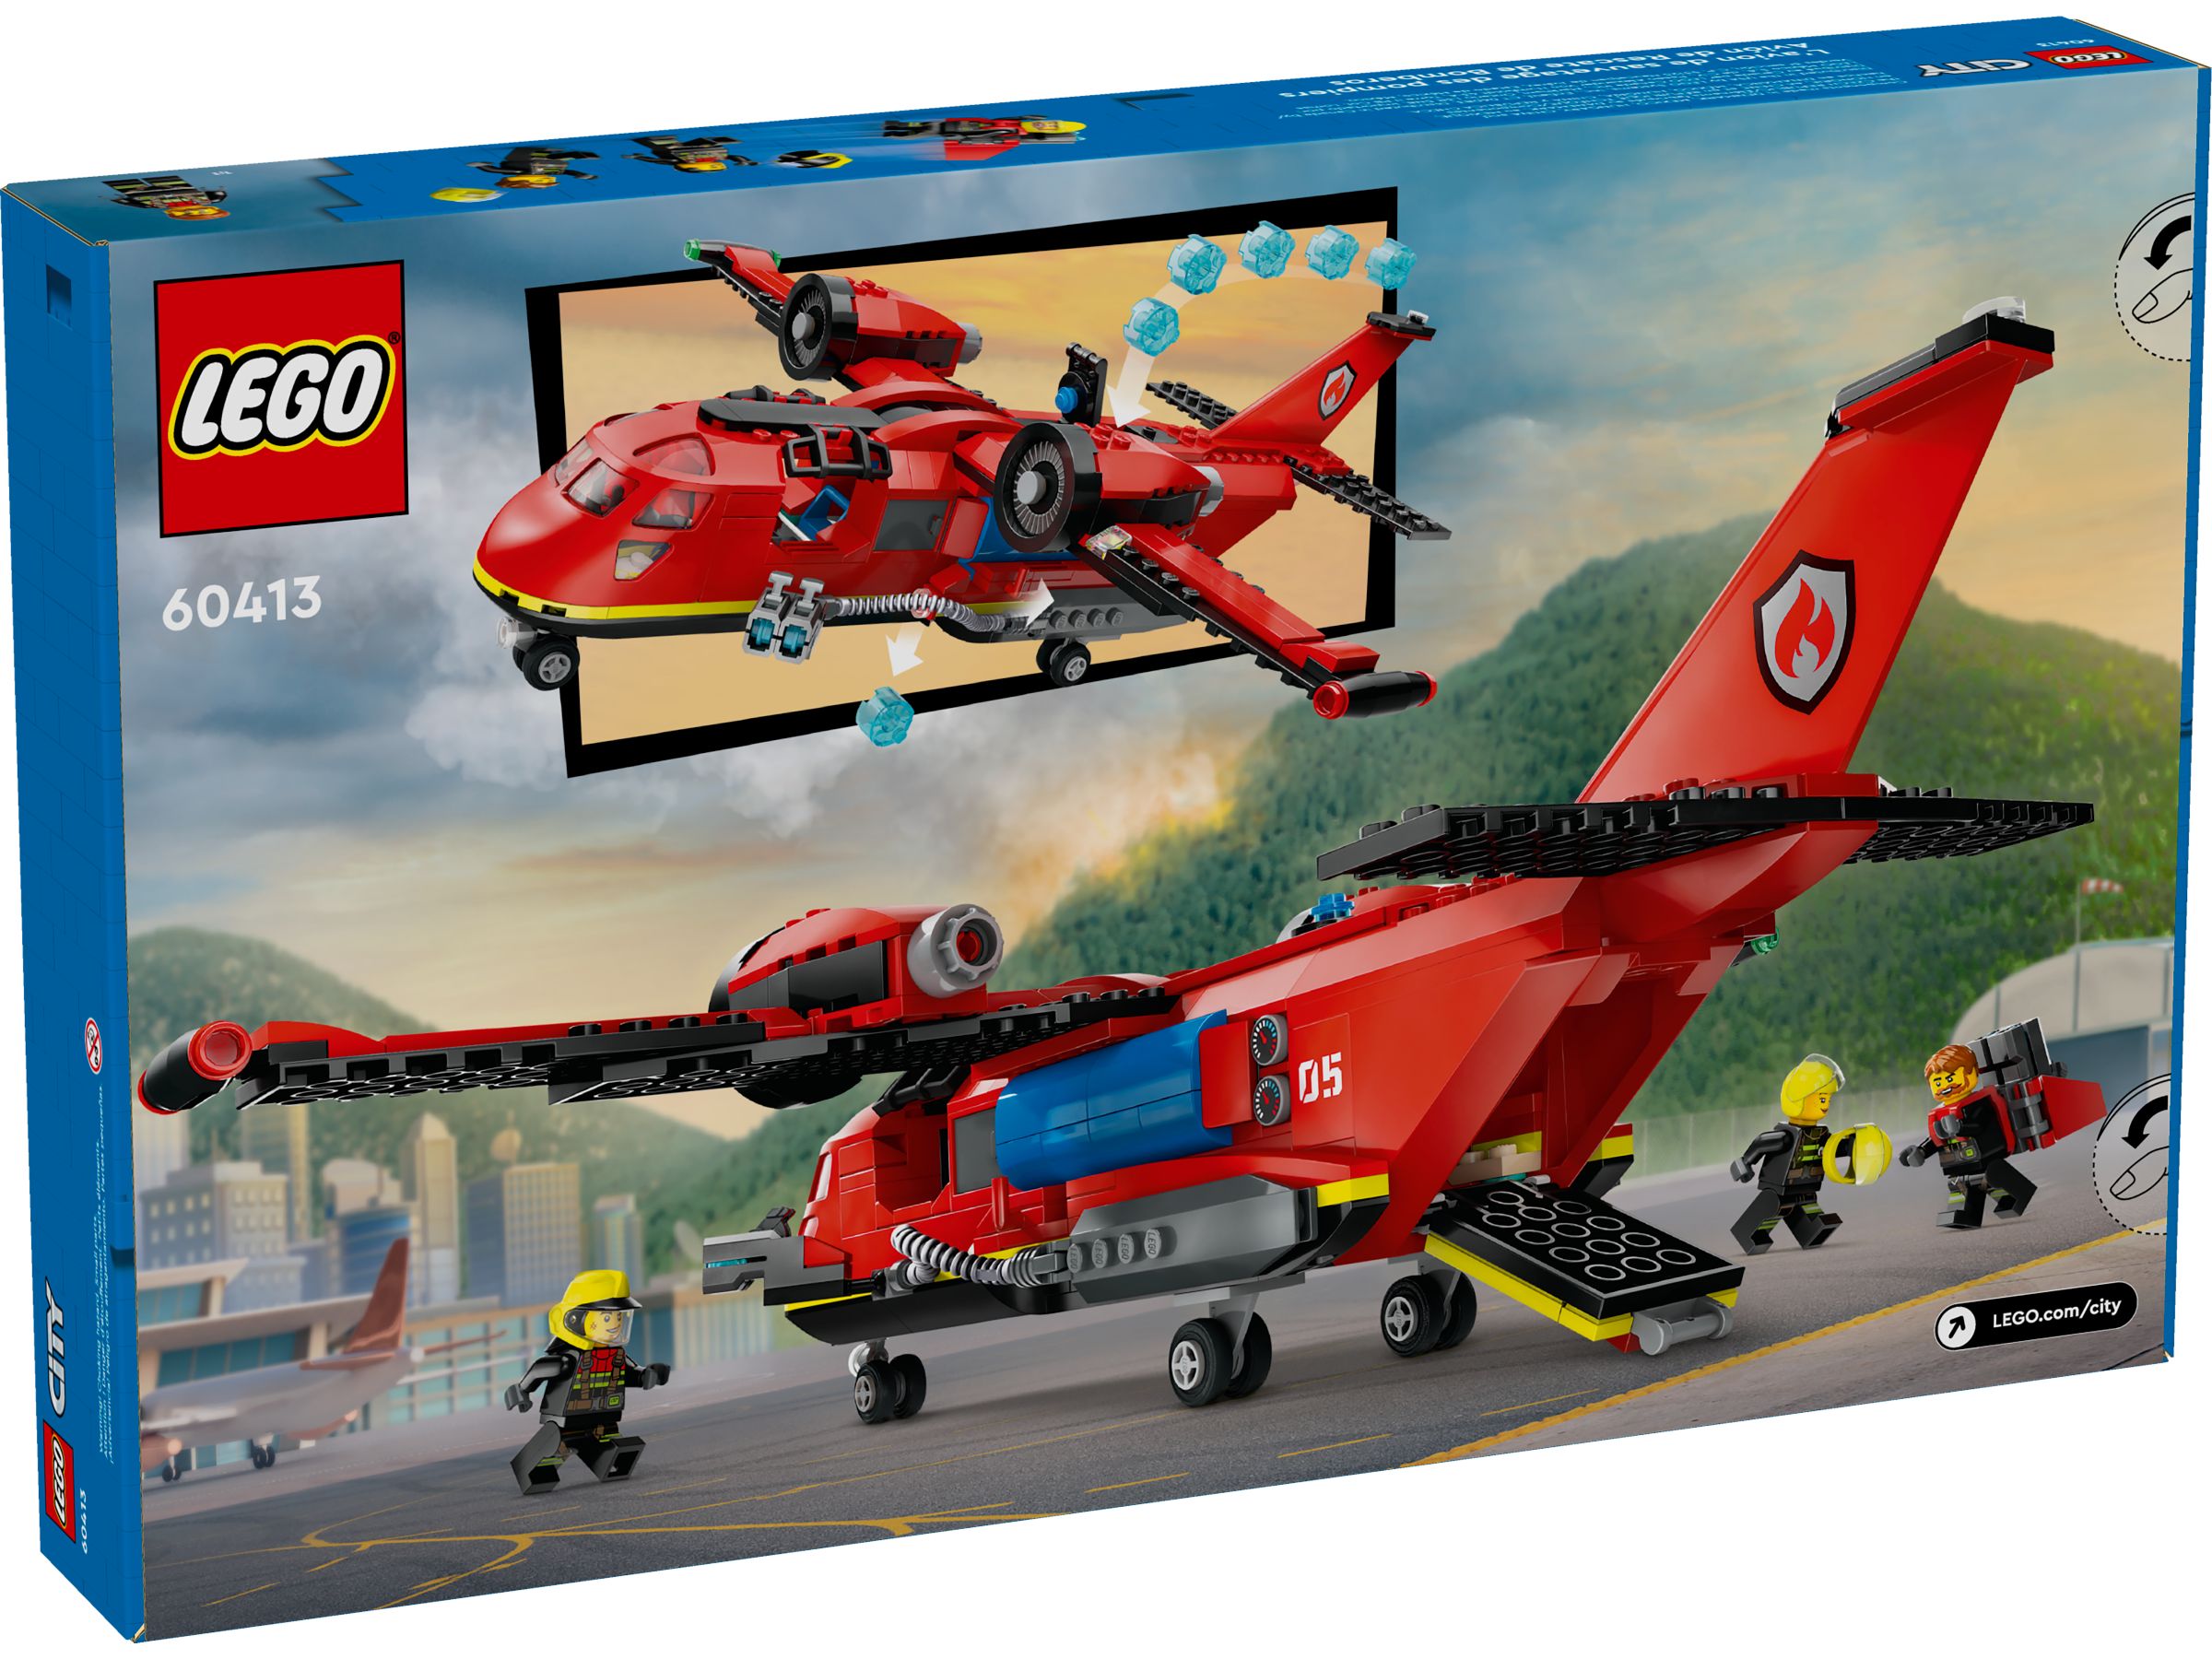 LEGO City 60413 Löschflugzeug LEGO_60413_Box5_v39.jpg